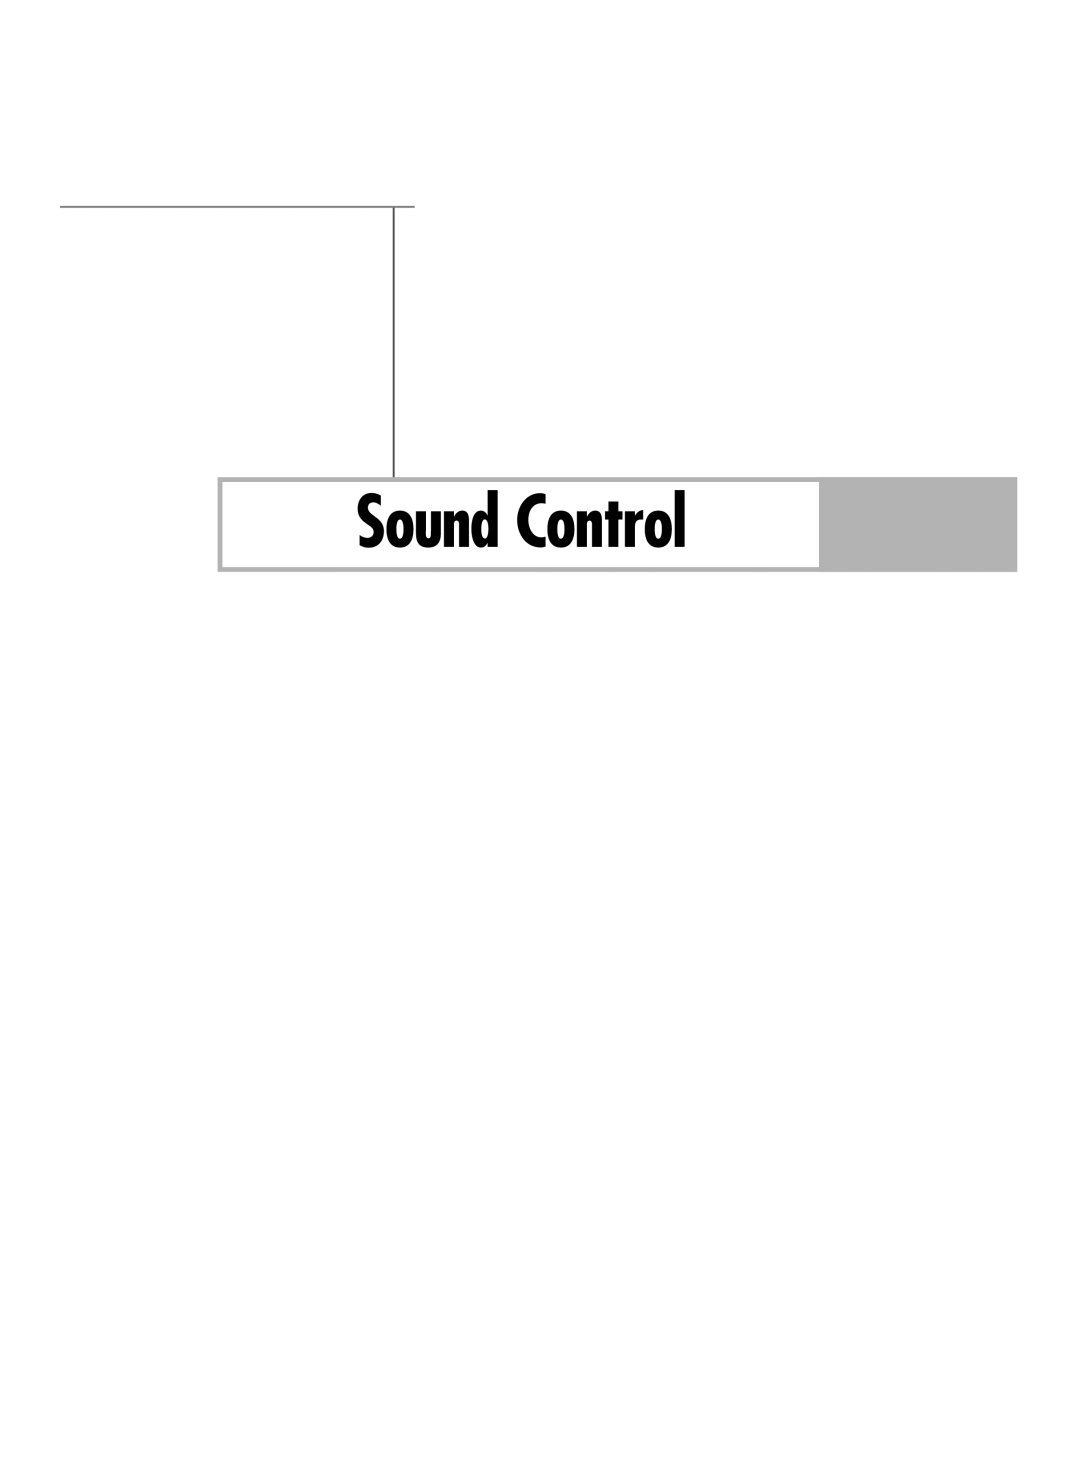 Samsung HL-R6178W, HL-R5678W, HL-R7178W manual Sound Control 